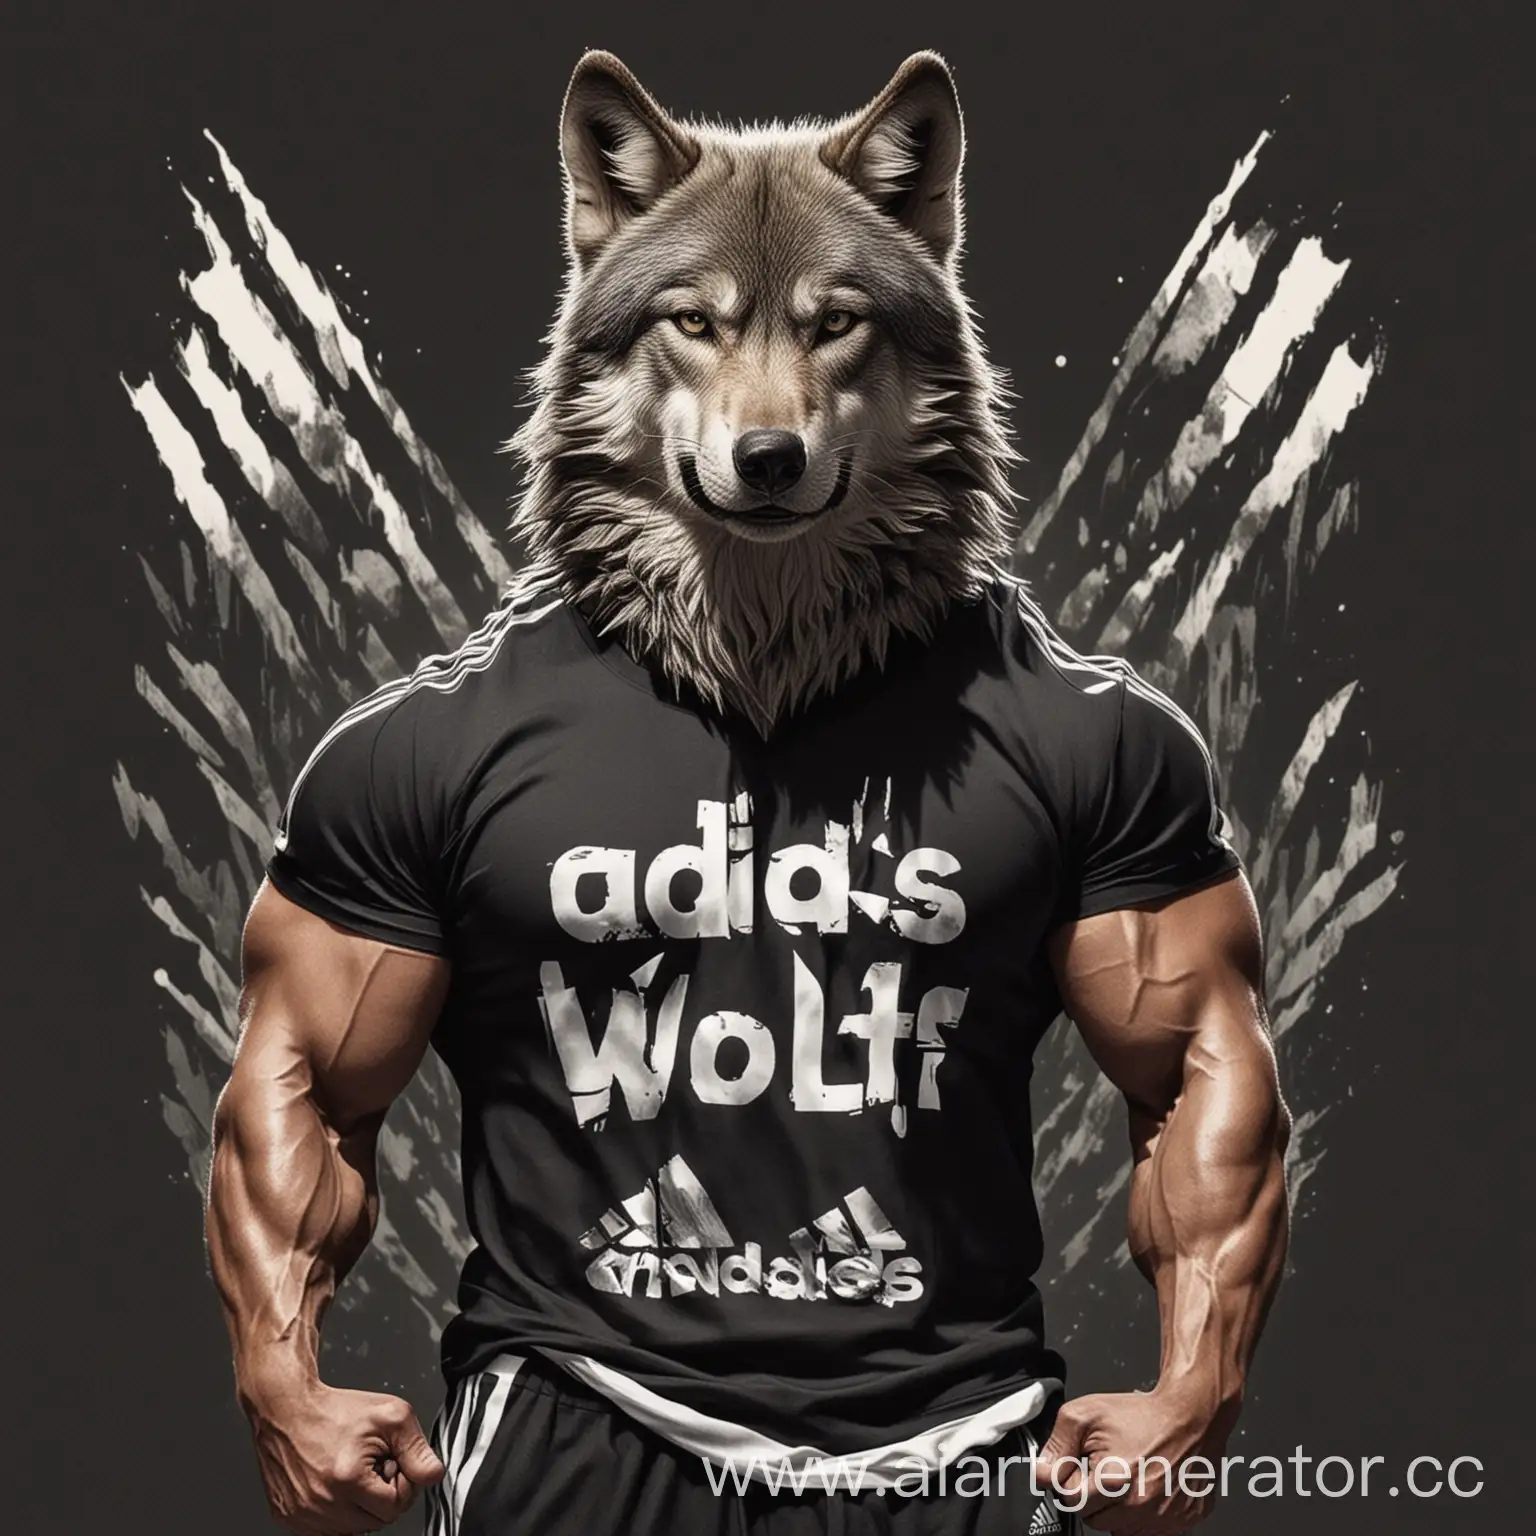 крутой волк с большими мускулами в футболке адидас